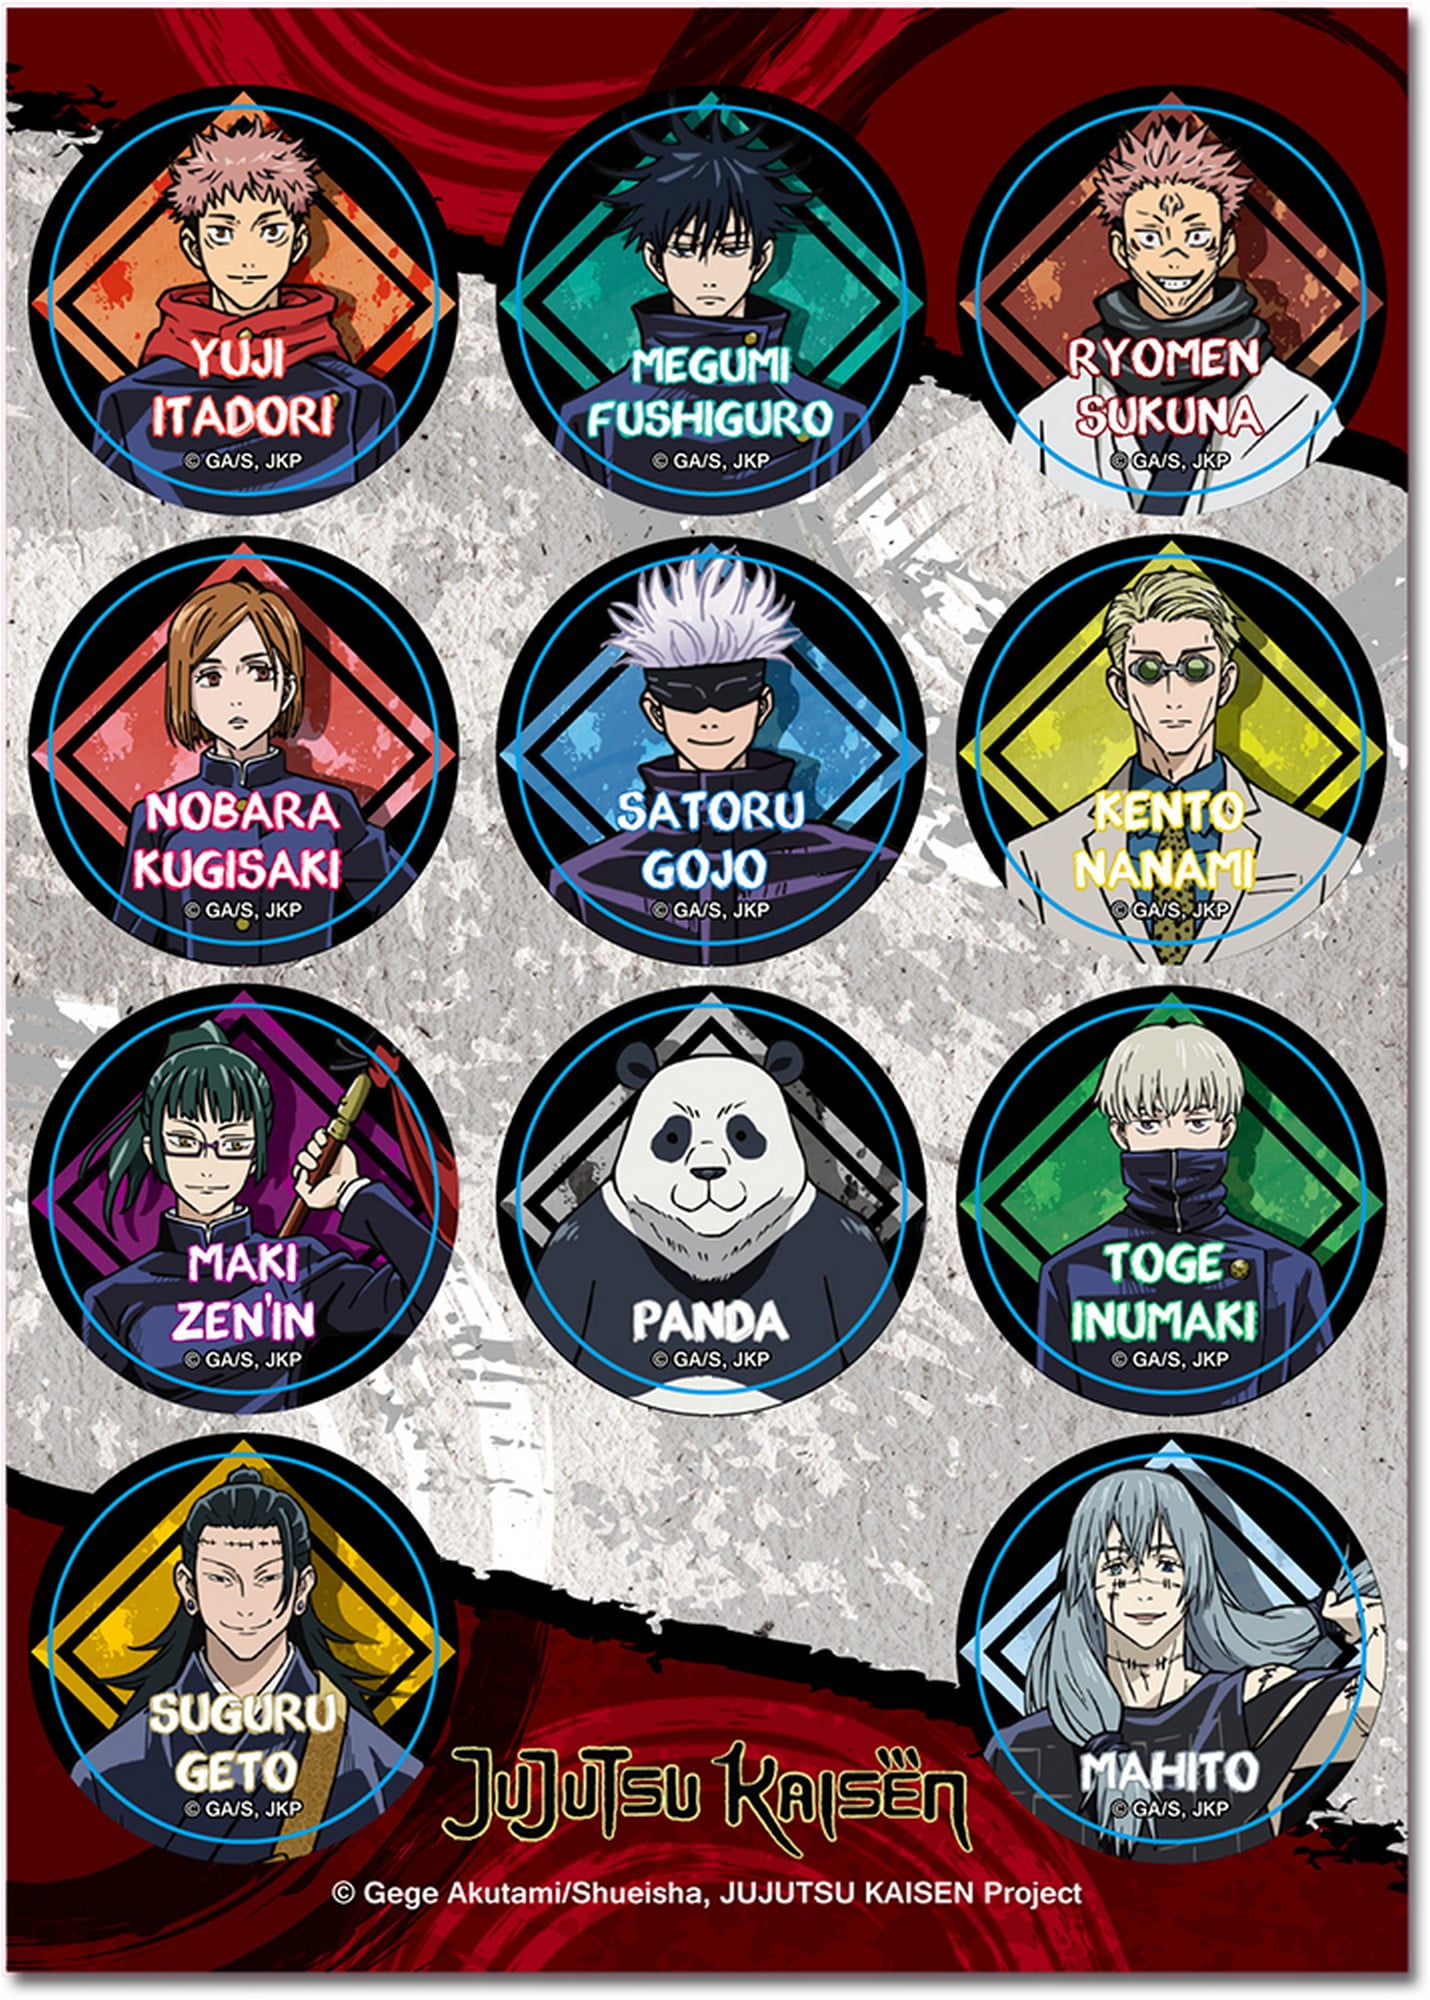 10 pairs of characters from Jujutsu Kaisen and My Hero Academia